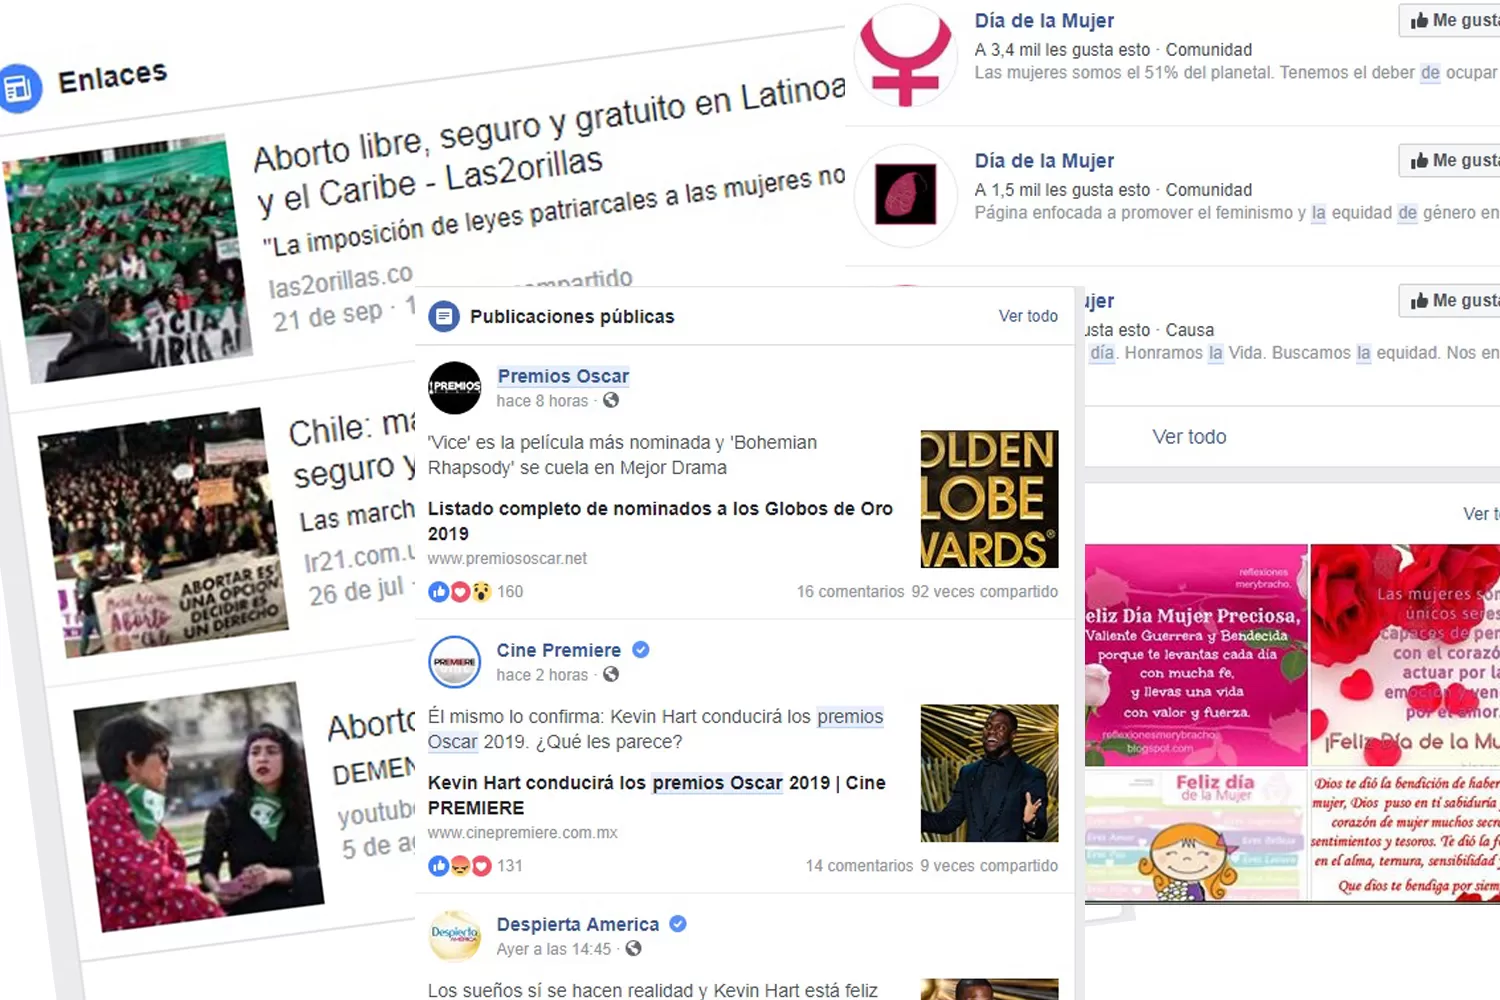 Los temas argentinos más destacados de Facebook en el 2018: Día de la Mujer, el Oscar y aborto legal